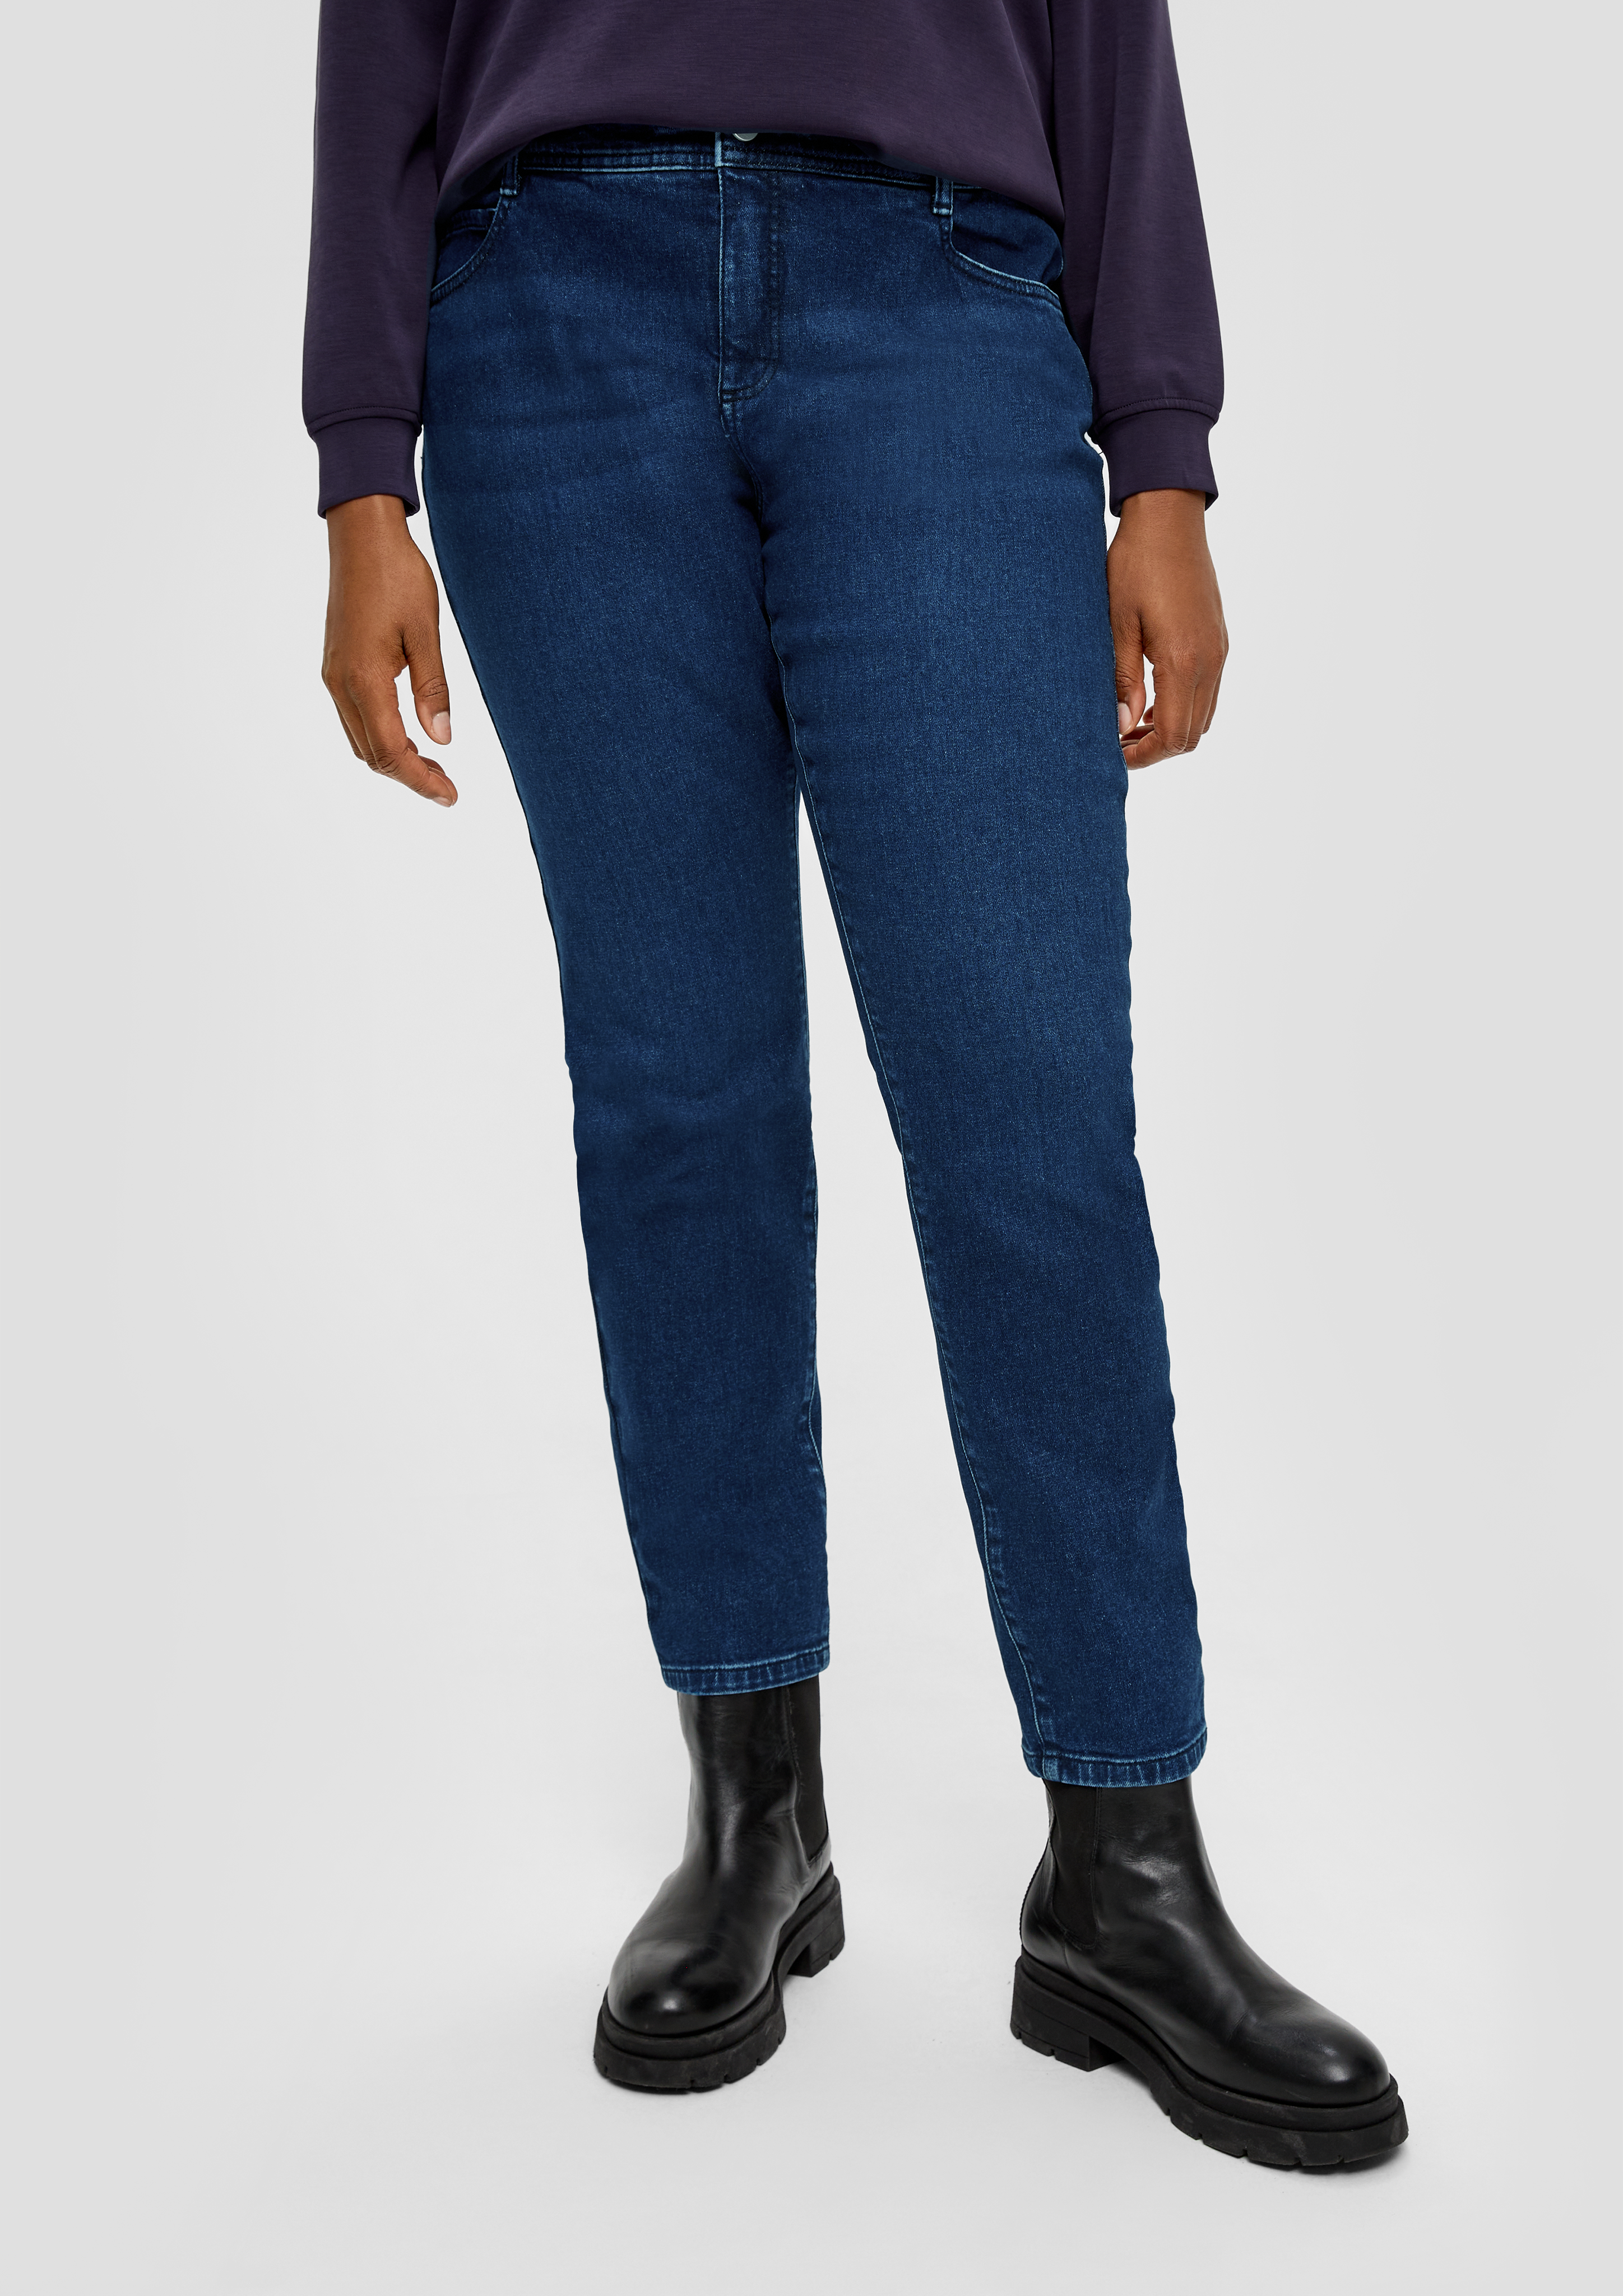 Jeans / skinny fit / mid rise / skinny leg / five-pocket design - blue | s. Oliver | Jeans